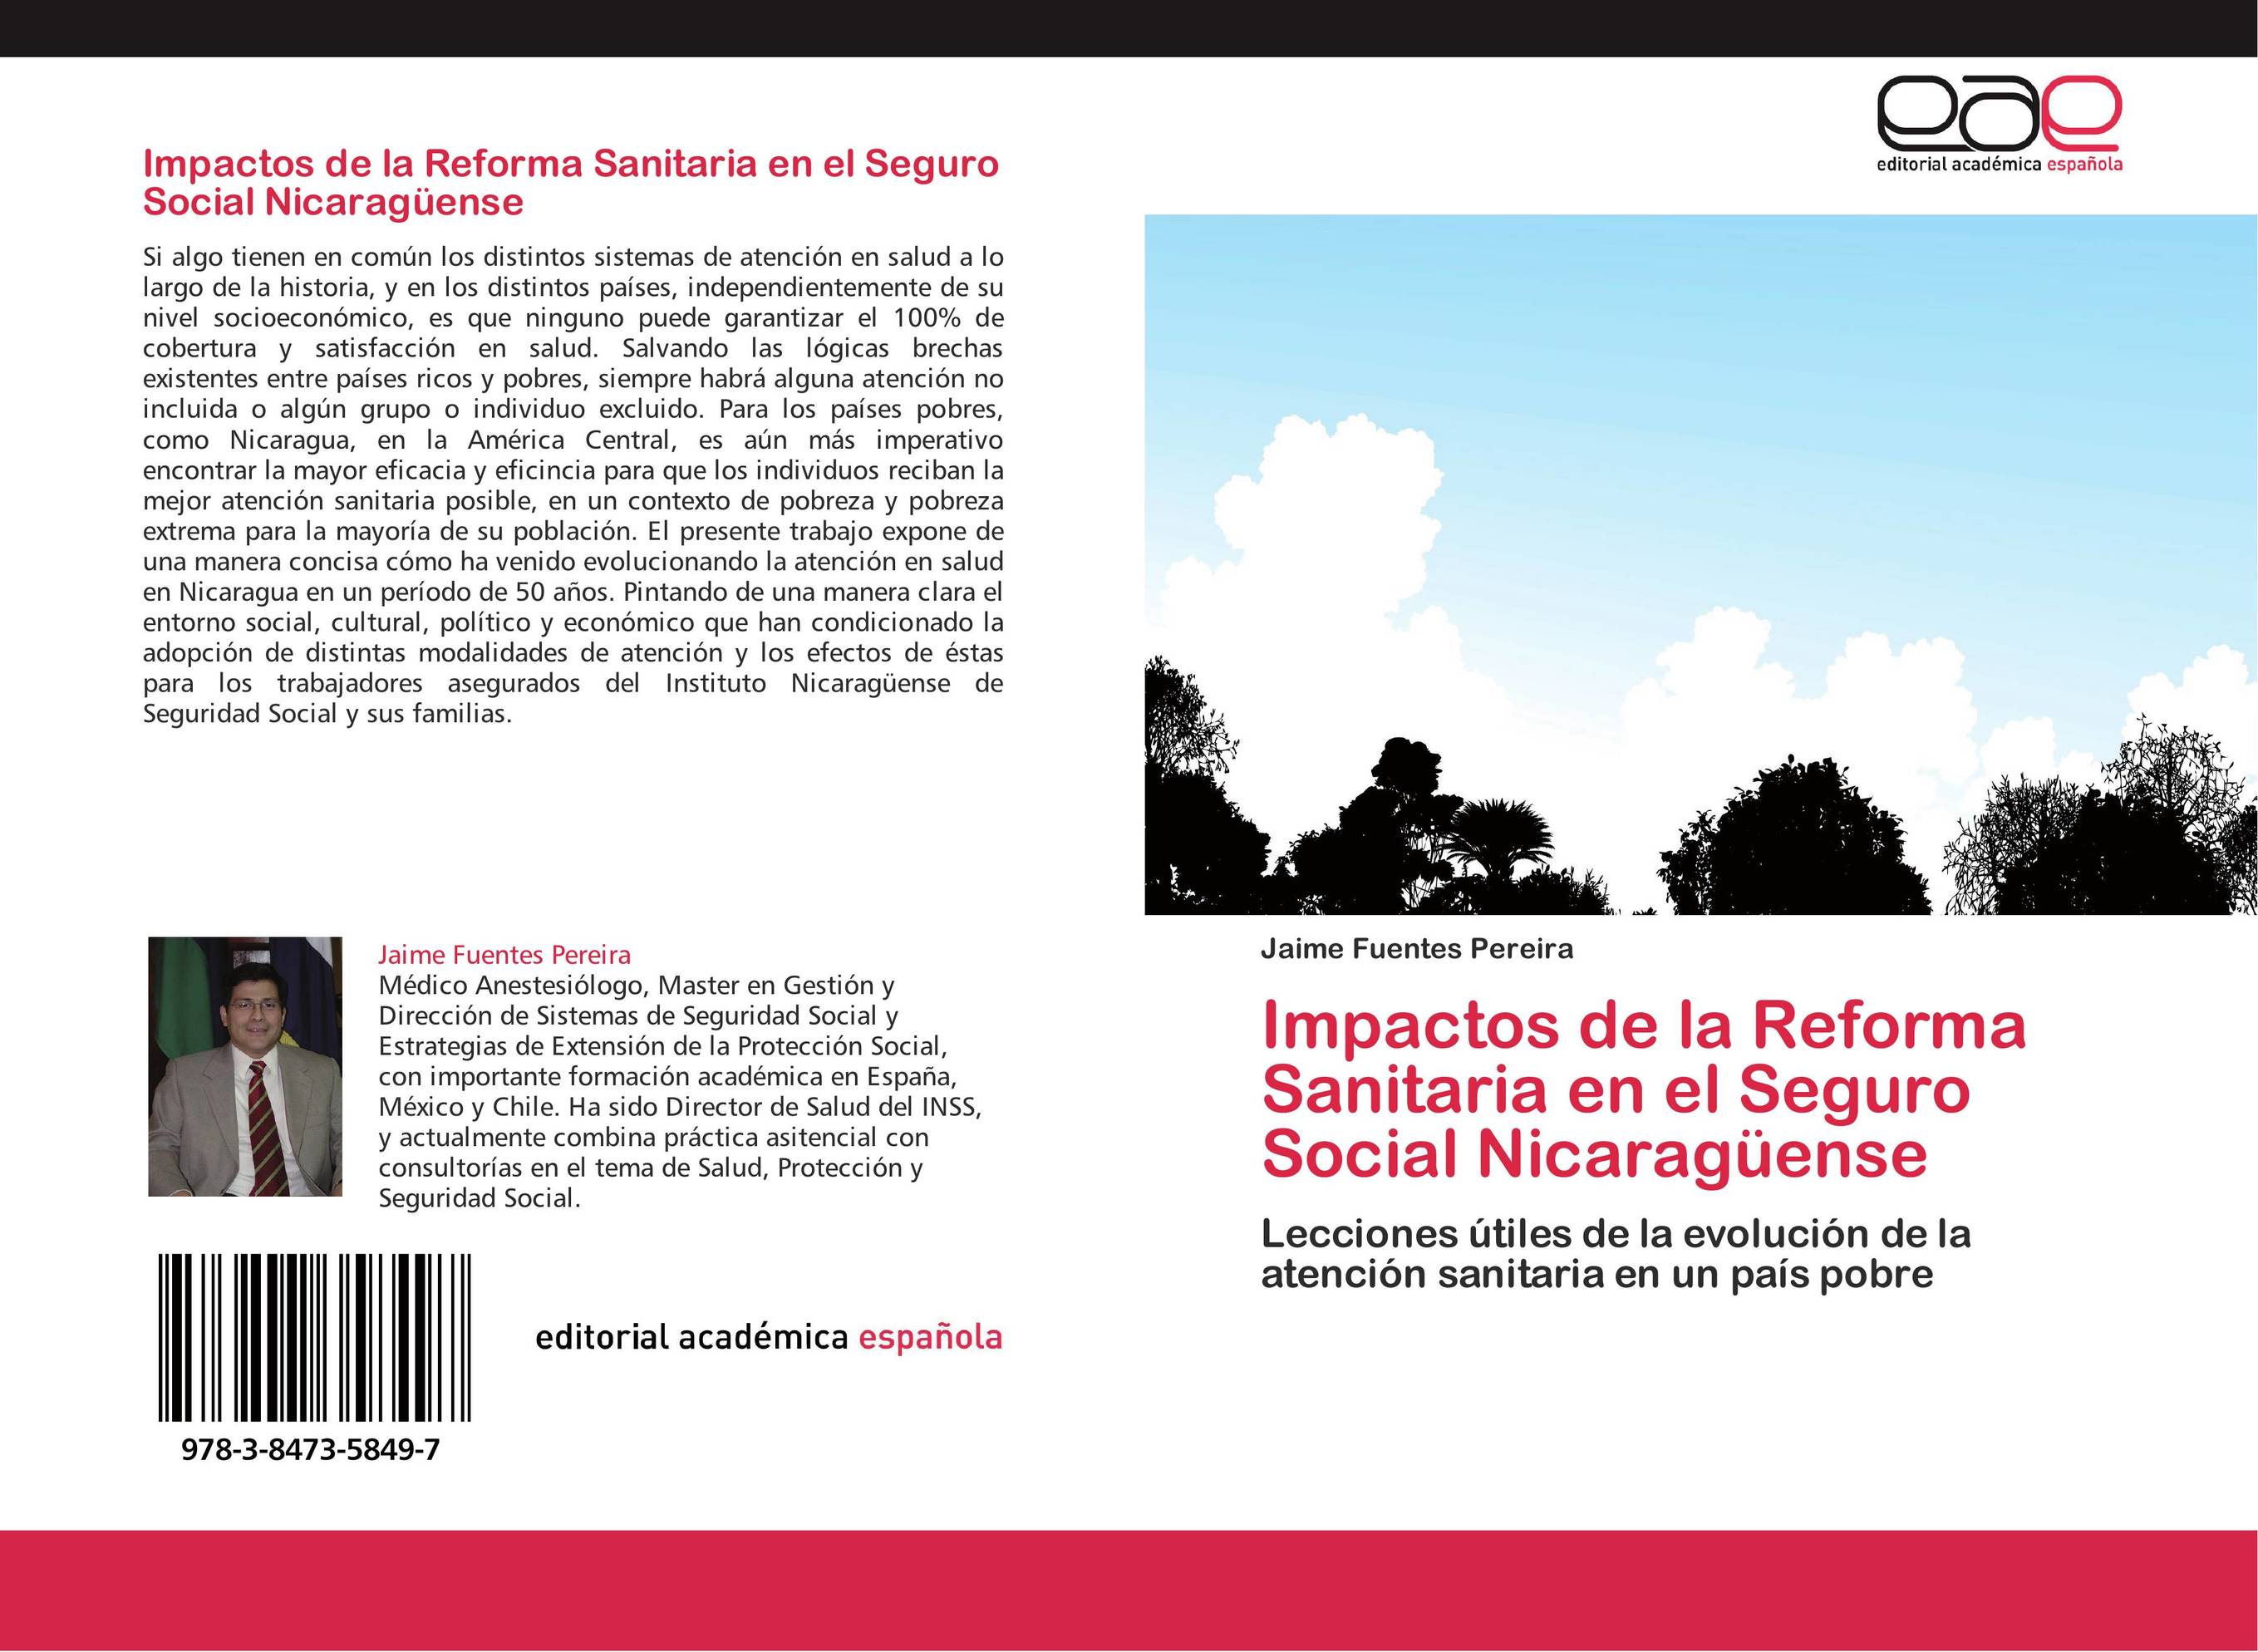 Impactos de la Reforma Sanitaria en el Seguro Social Nicaragüense